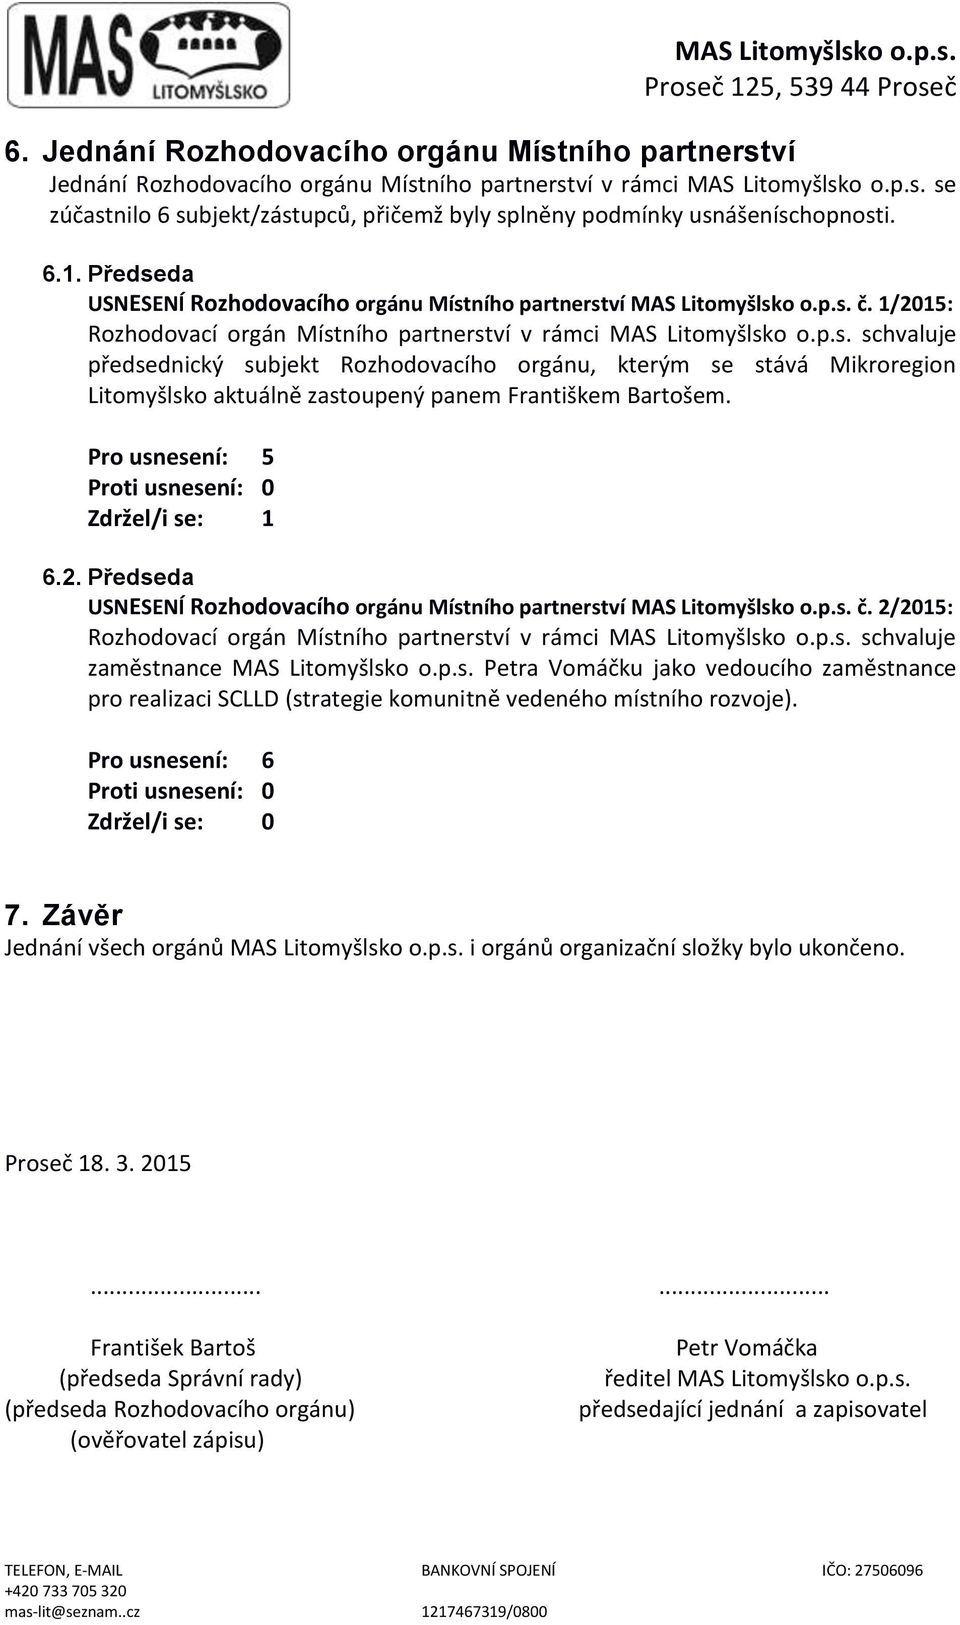 Pro usnesení: 5 Zdržel/i se: 1 6.2. Předseda USNESENÍ Rozhodovacího orgánu Místního partnerství MAS Litomyšlsko o.p.s. č. 2/2015: Rozhodovací orgán Místního partnerství v rámci MAS Litomyšlsko o.p.s. schvaluje zaměstnance MAS Litomyšlsko o.